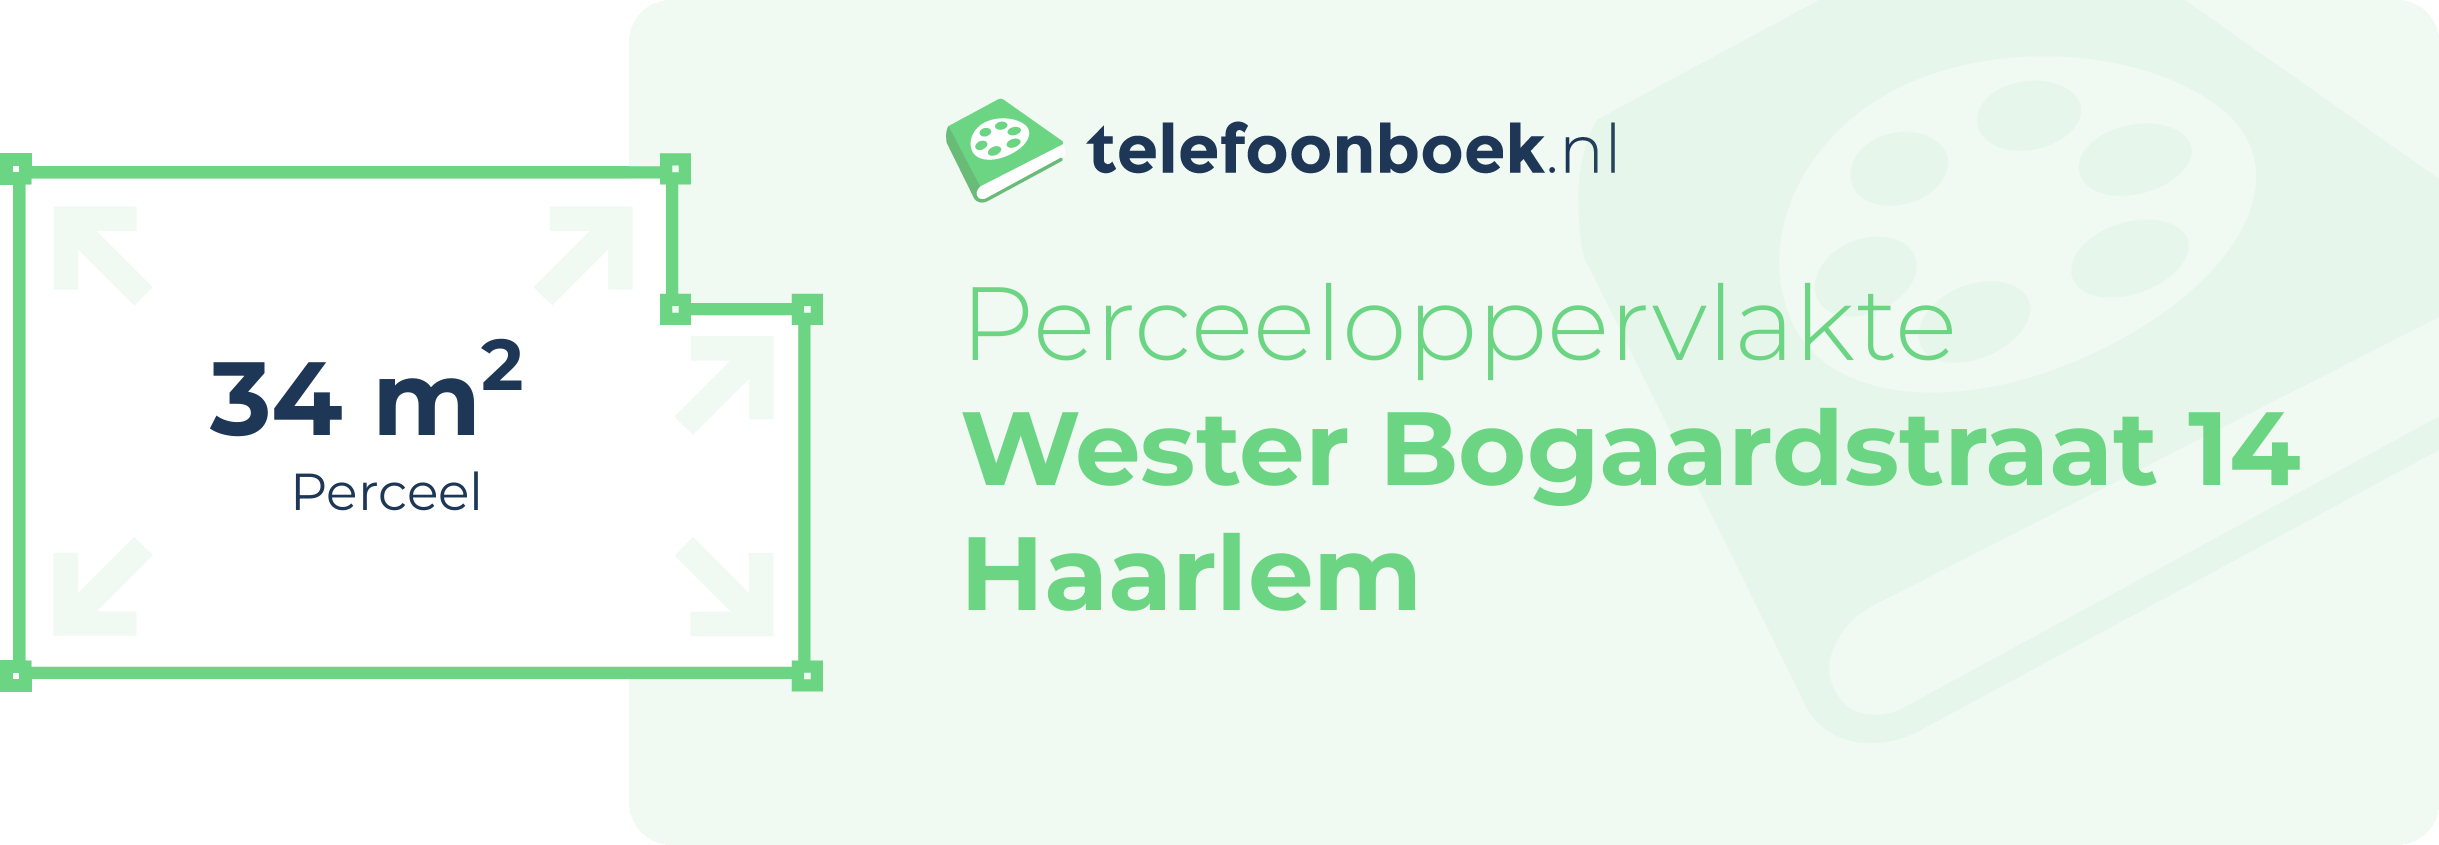 Perceeloppervlakte Wester Bogaardstraat 14 Haarlem